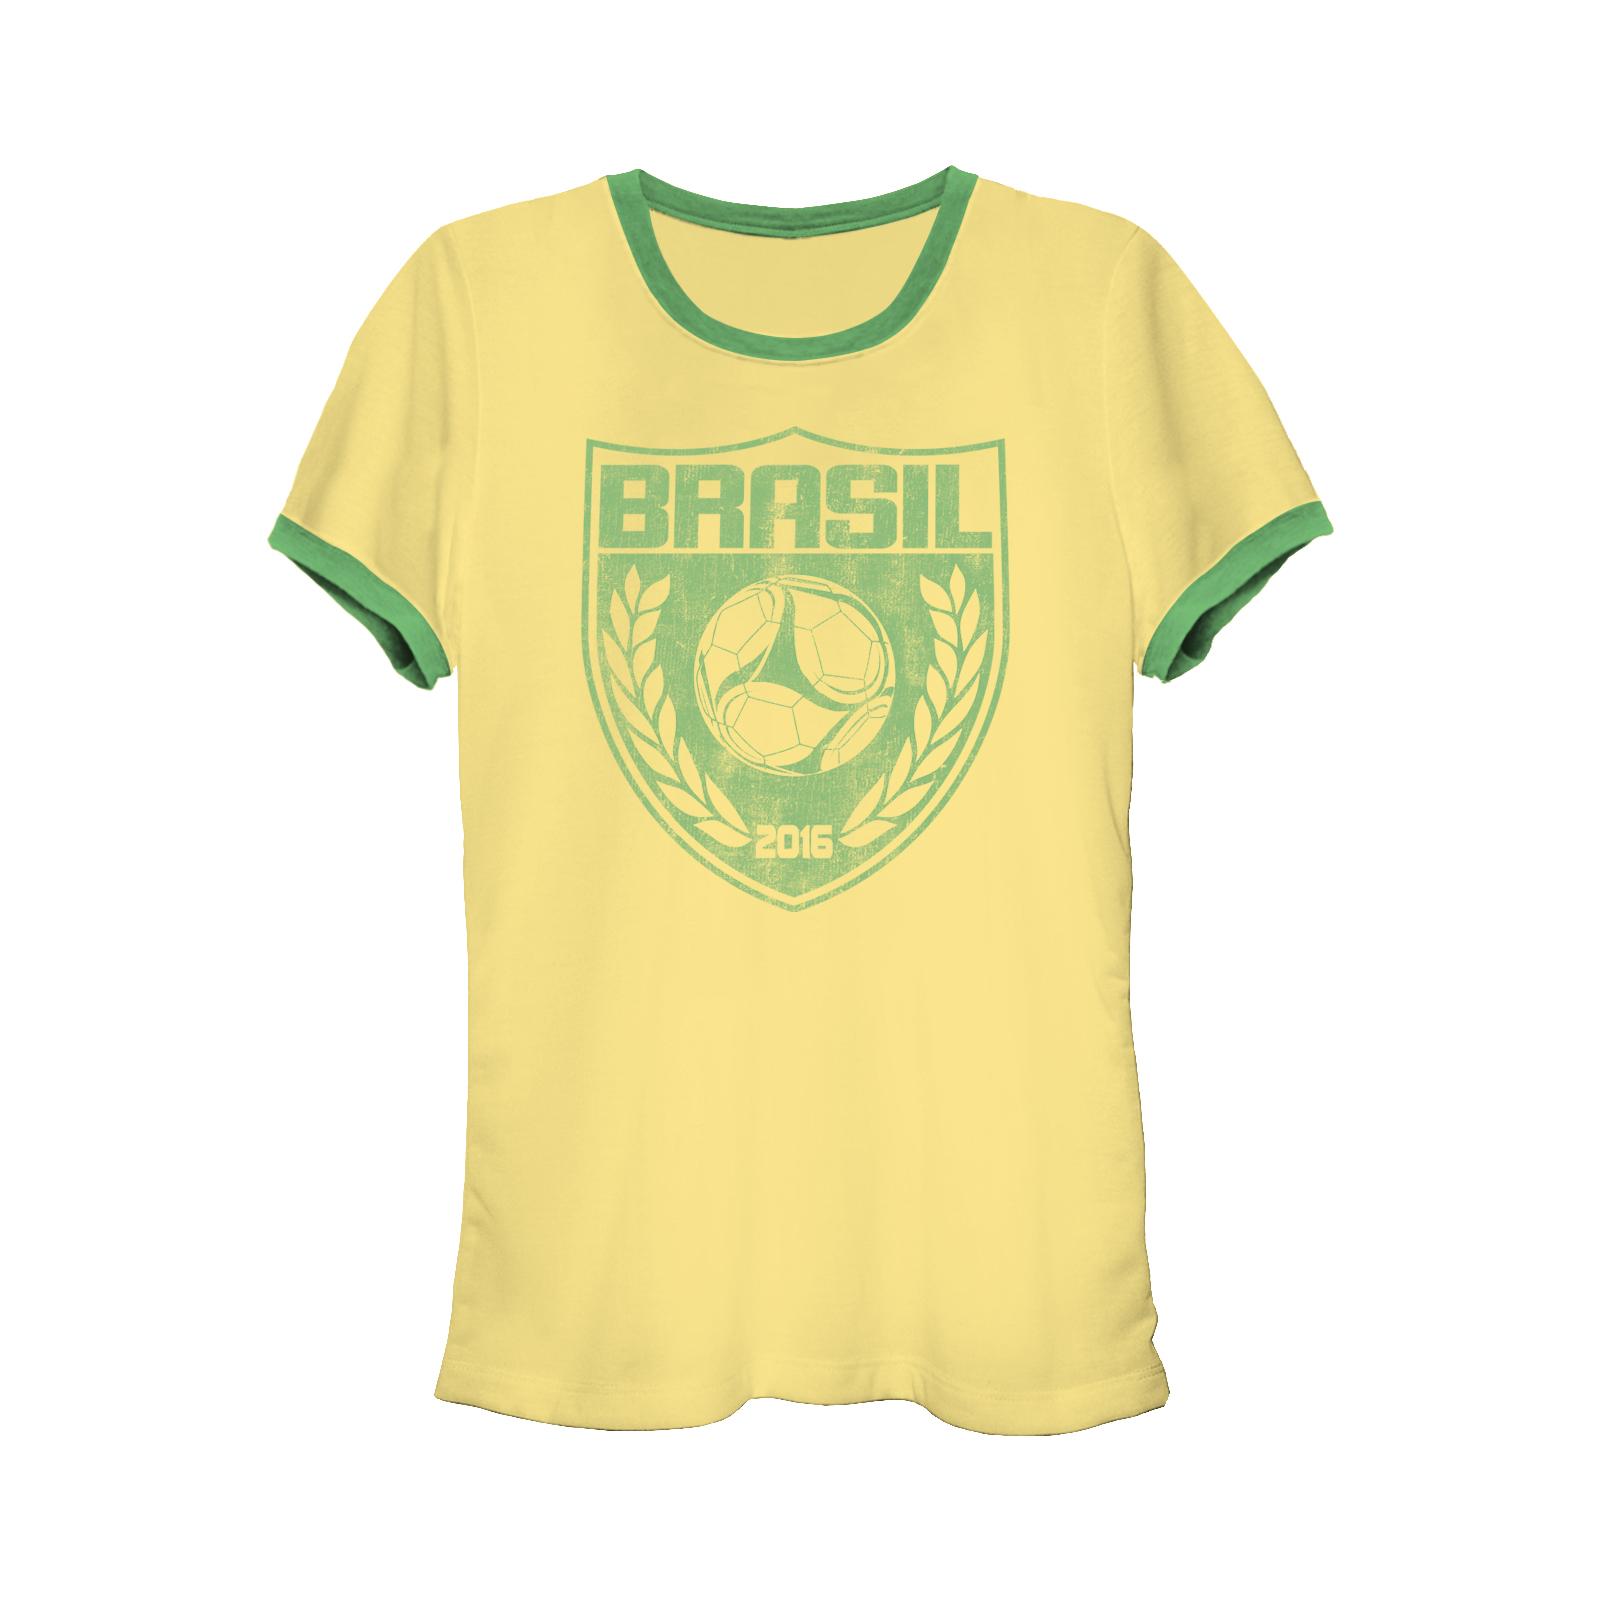 Women's Graphic T-Shirt - Brazil National Football Team